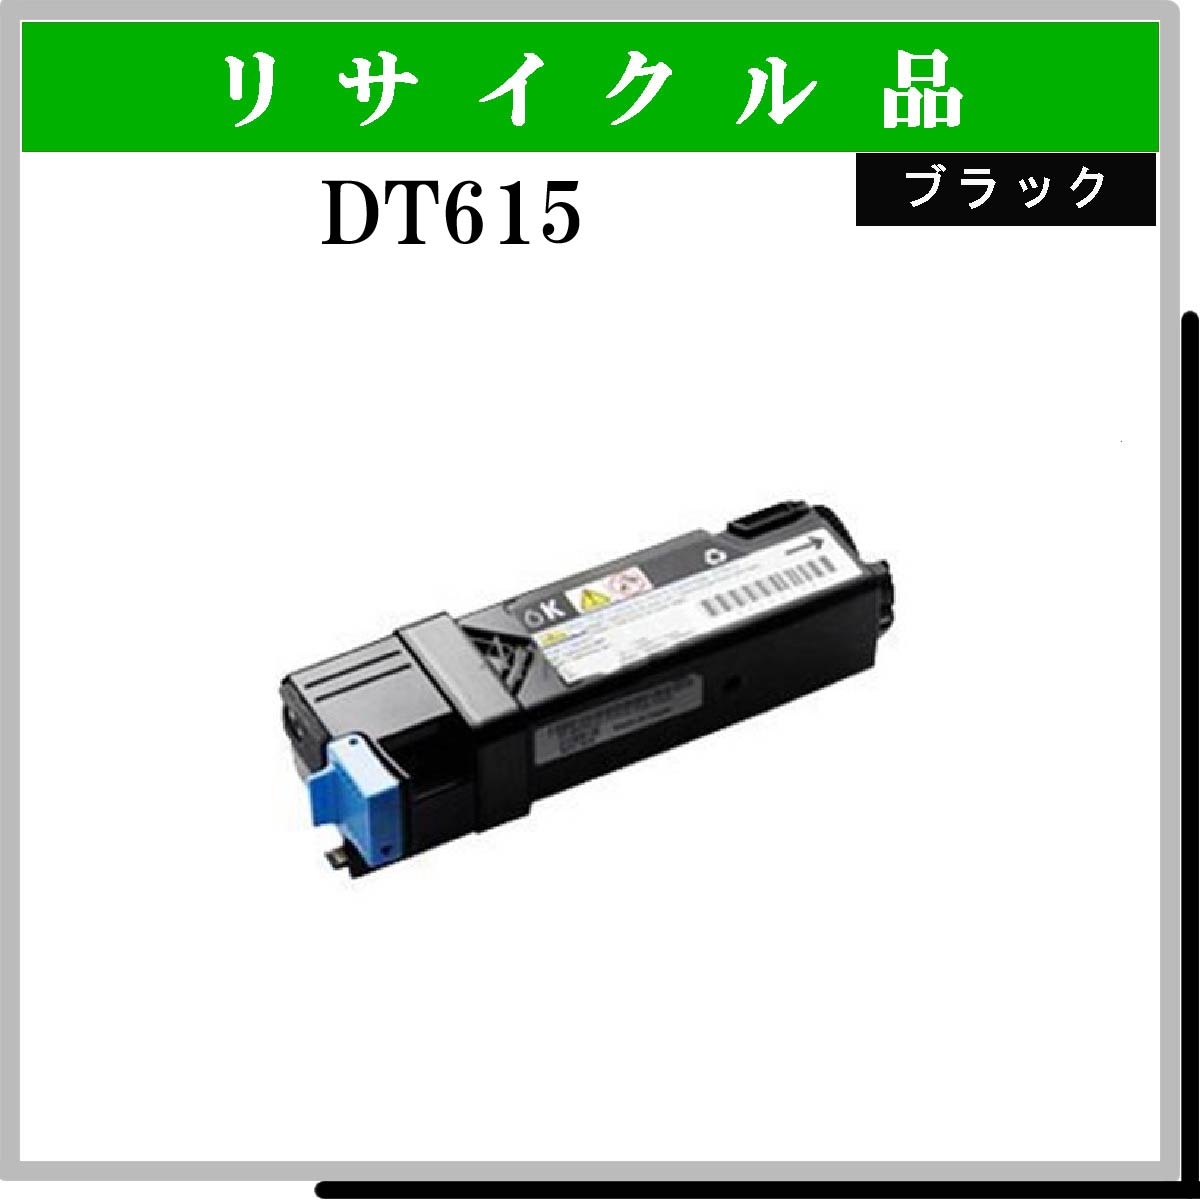 1320c用 (DT615)